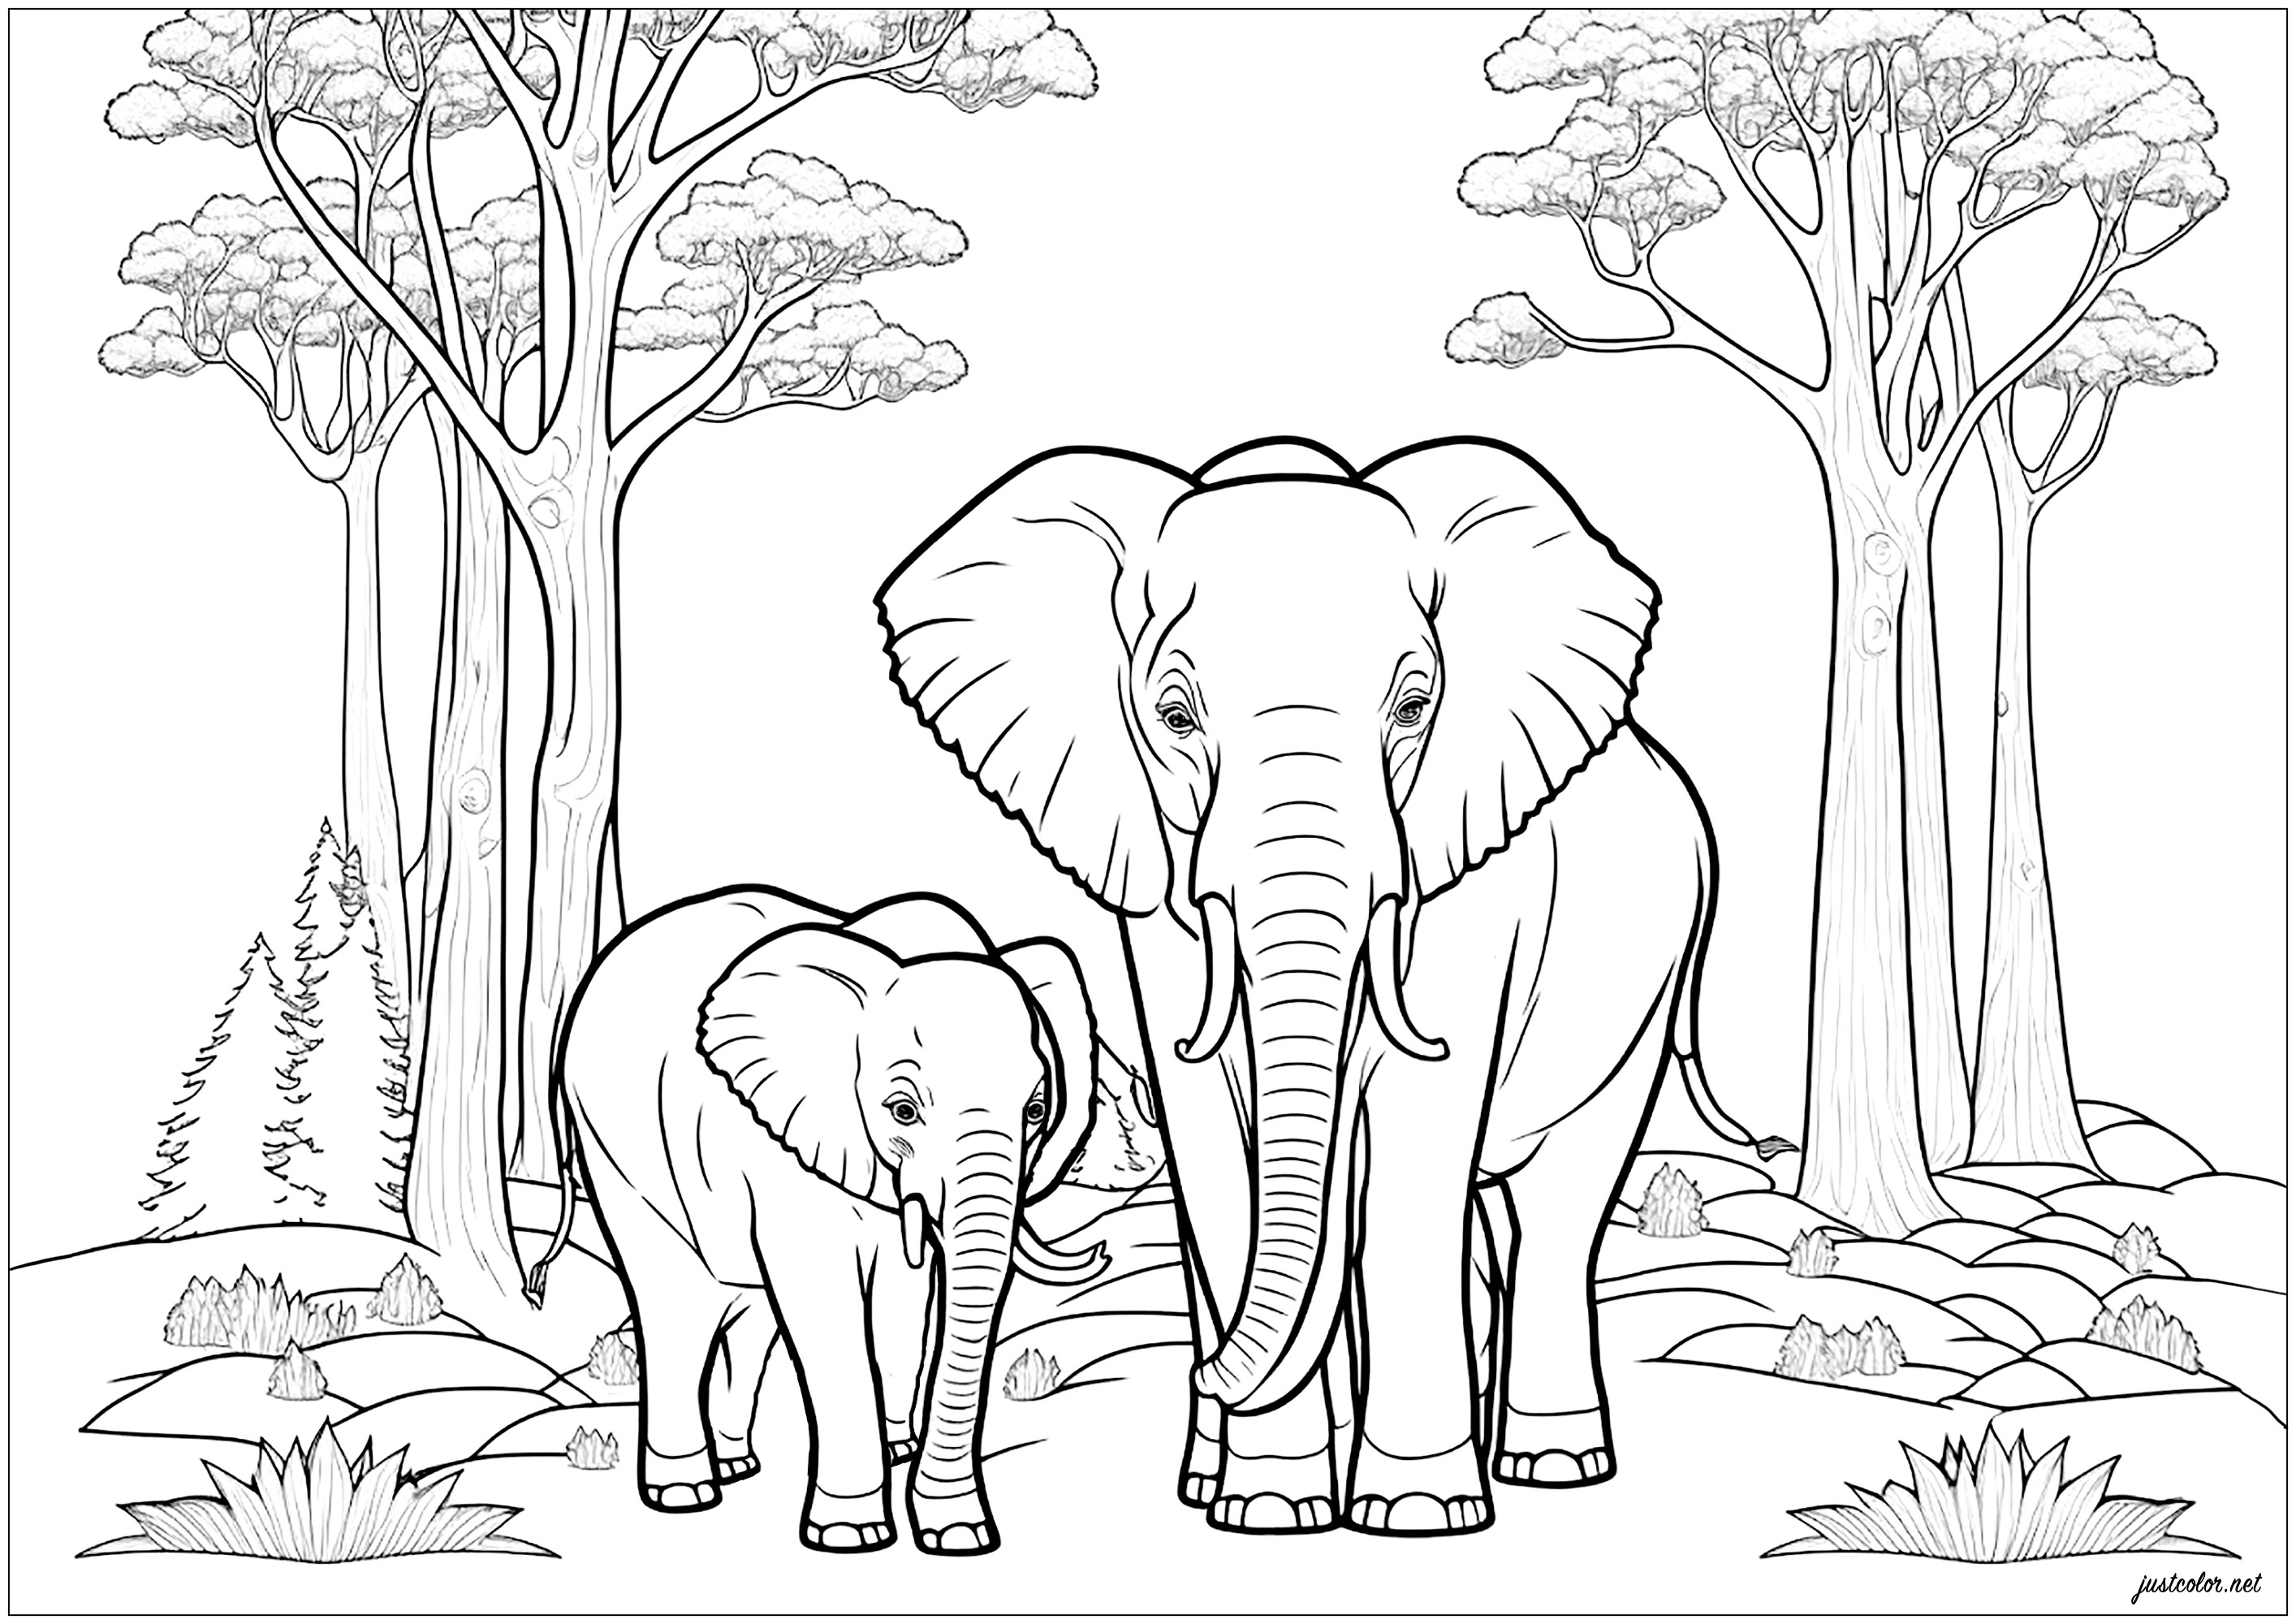 Elefantenmutter und ihr Kalb, mit einem schönen Wald im Hintergrund